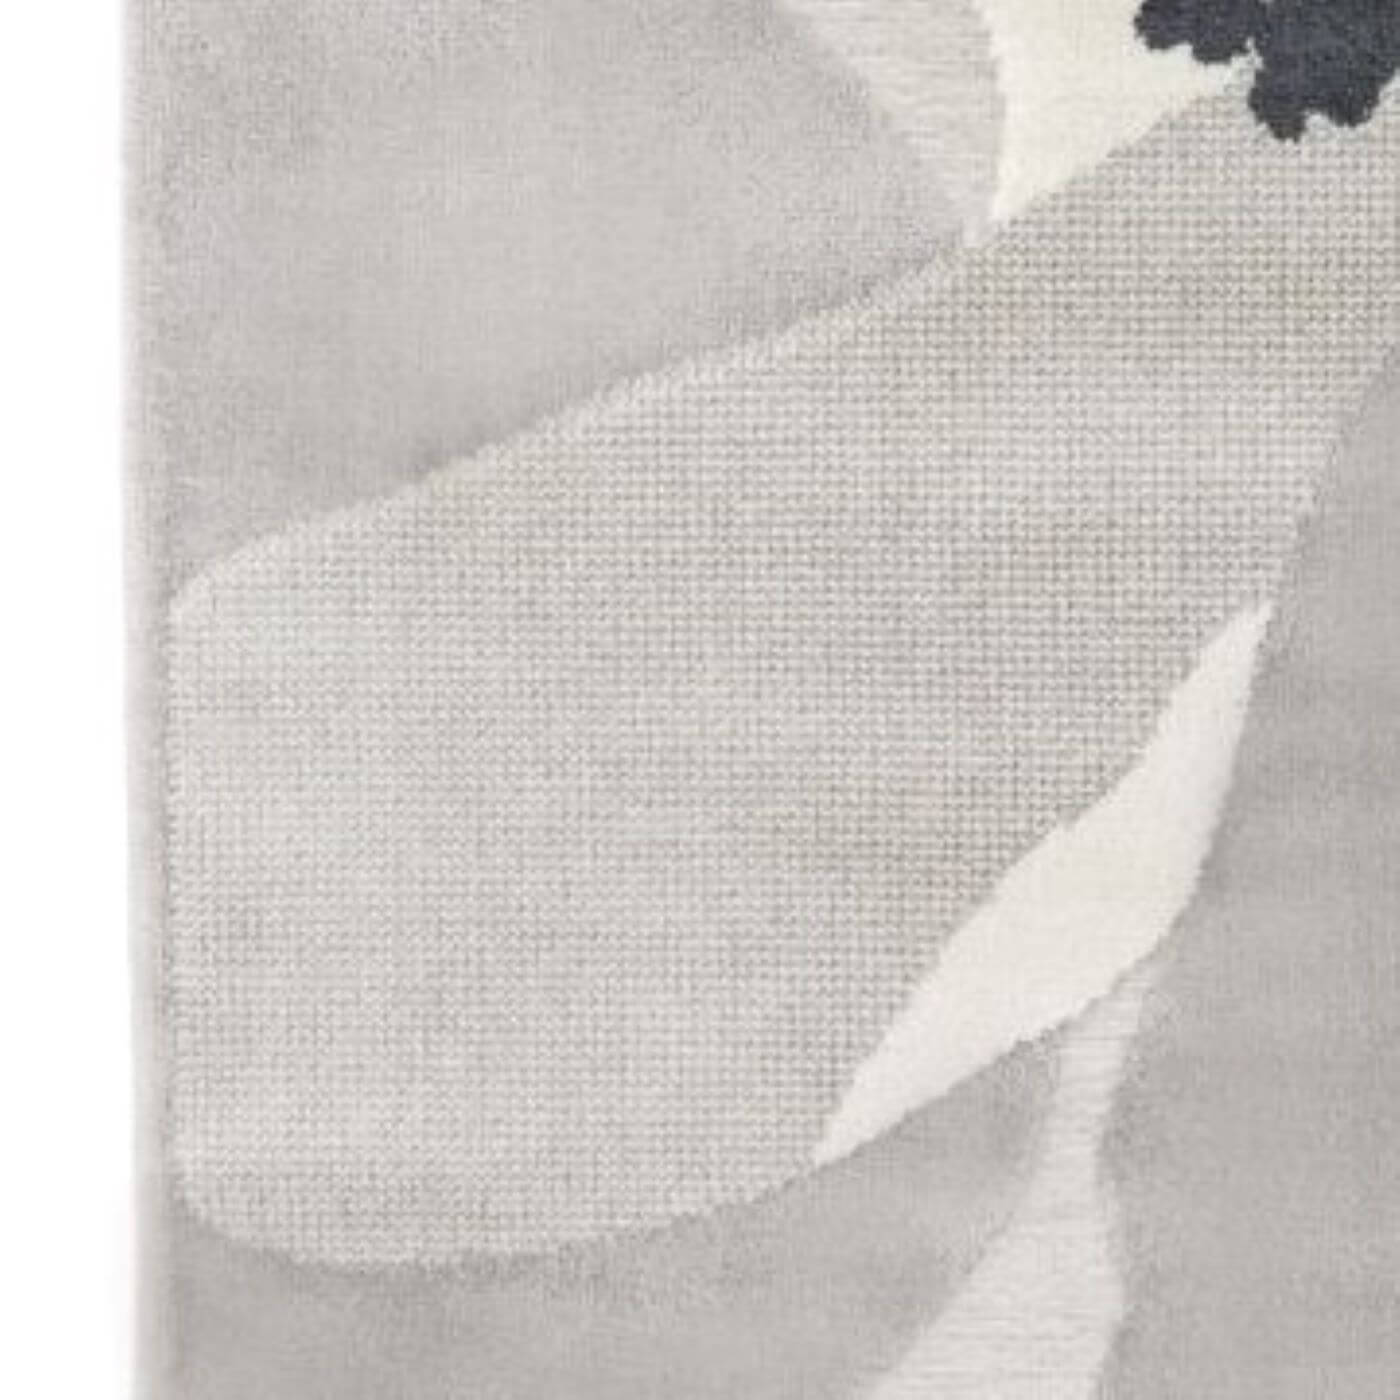 Dywanik ozdobny beżowy kwiat MIRANDA. Fragment cienkiego jasnego dekoracyjnego beżowego dywanika do pokoju lub sypialni. Nowoczesny skandynawski design